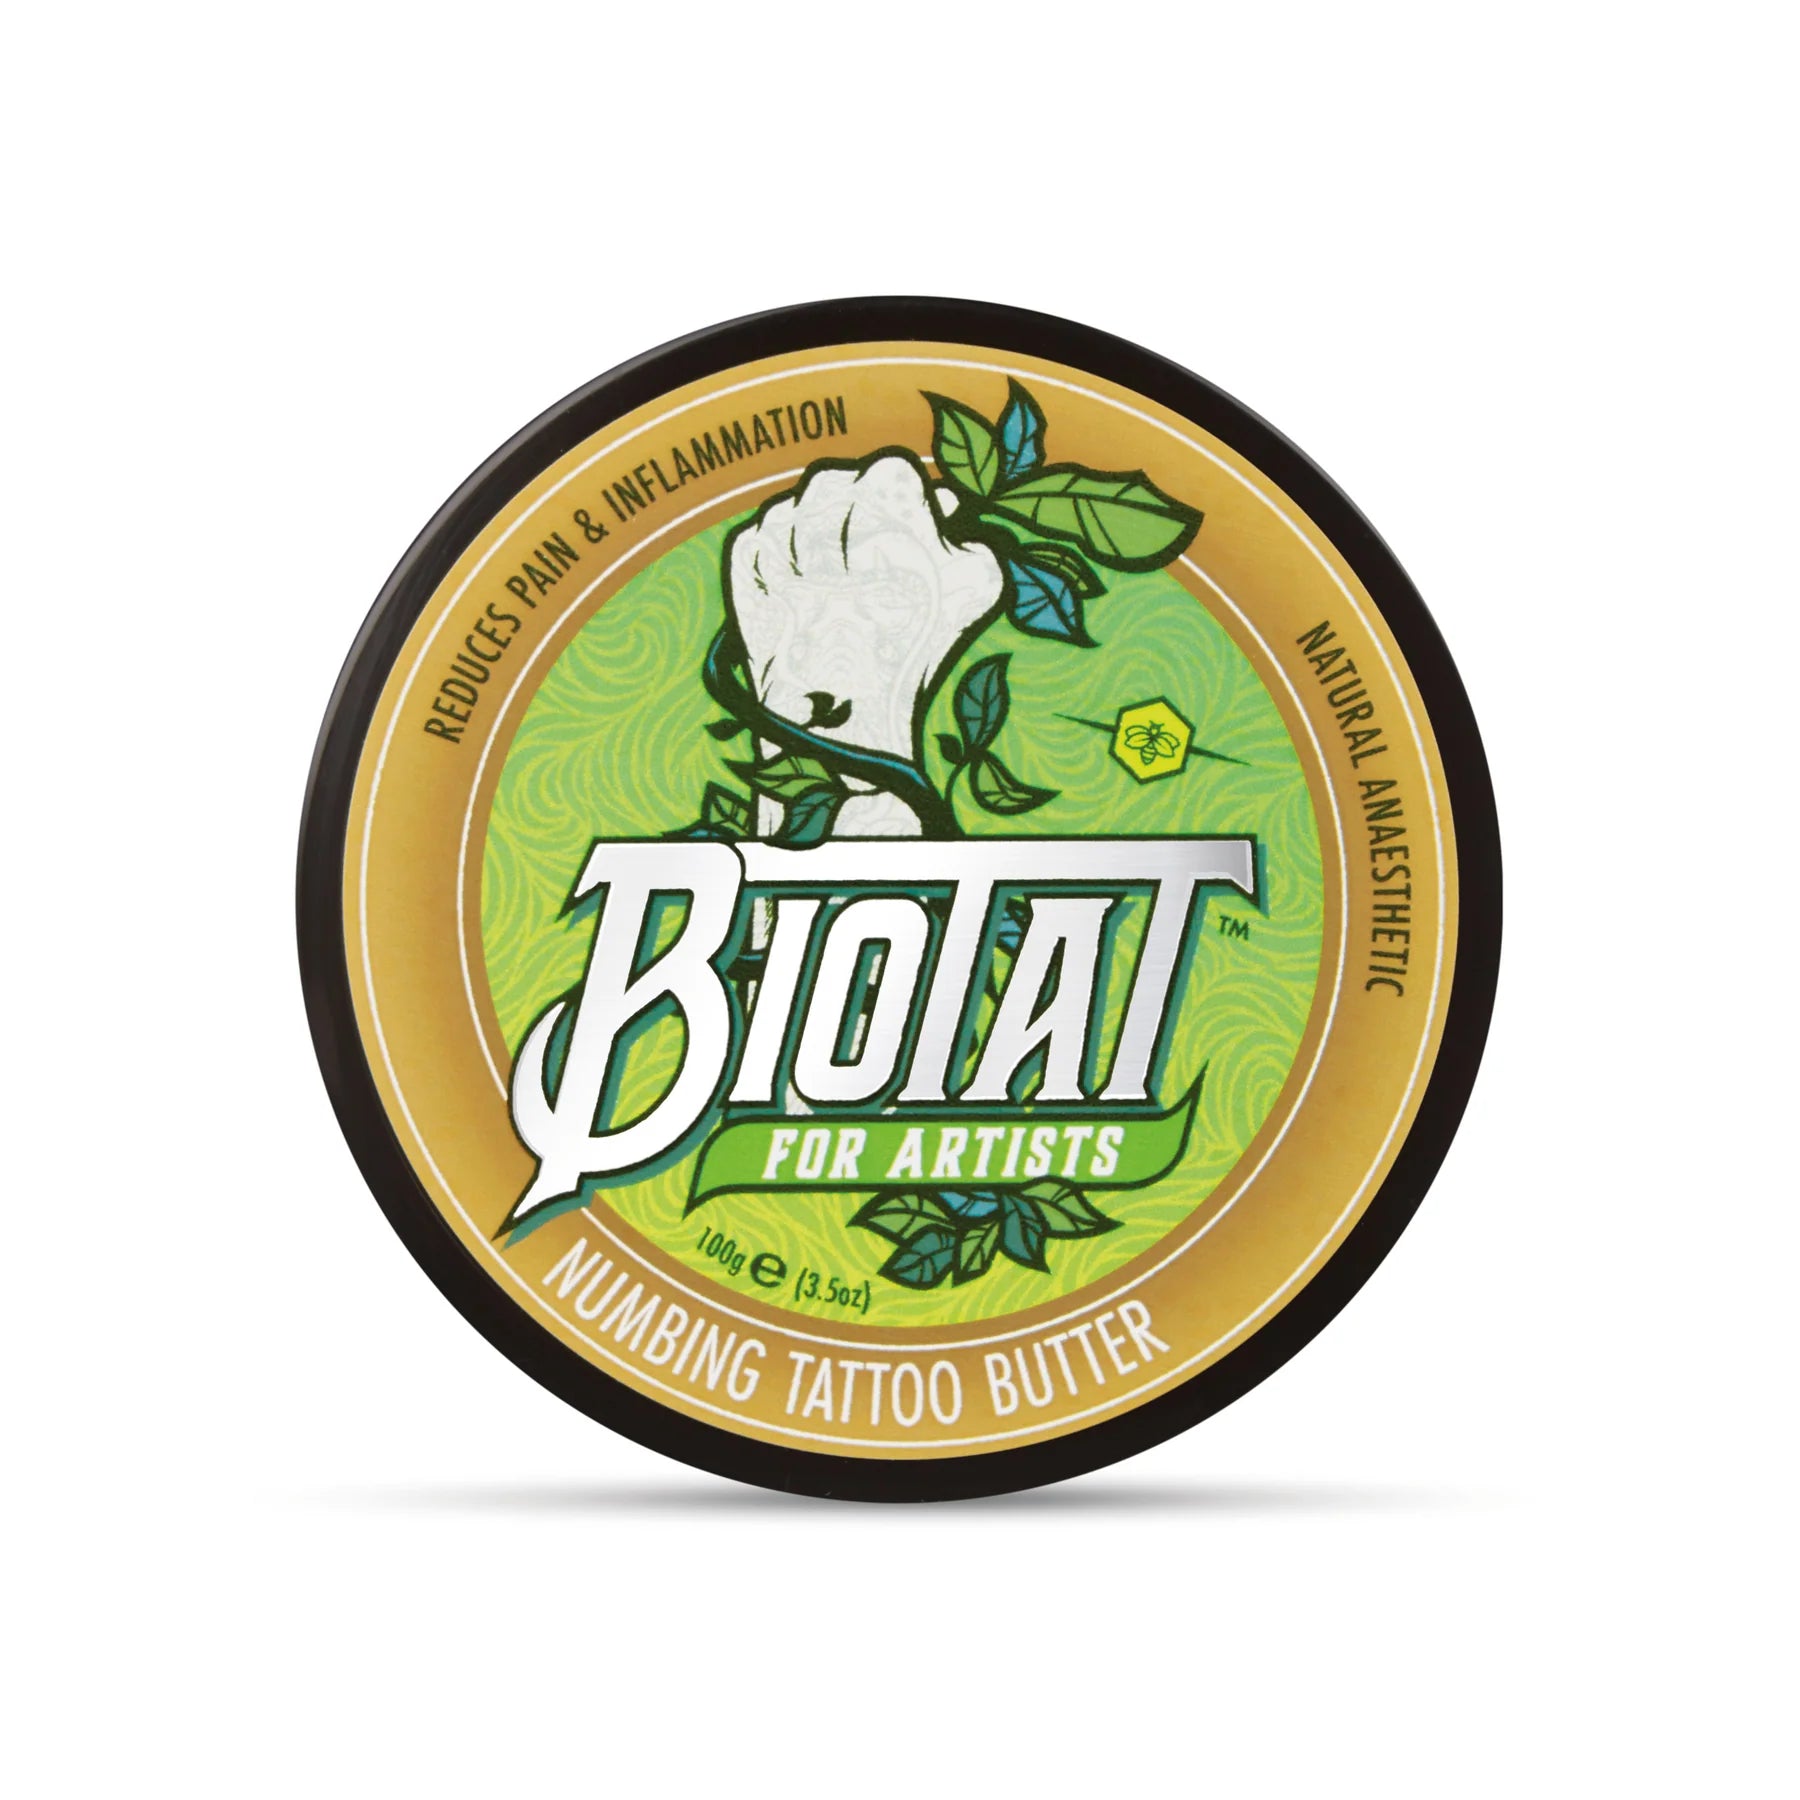 Biotat Natural Numbing Tattoo Butter 100g - mmtattoo supplies